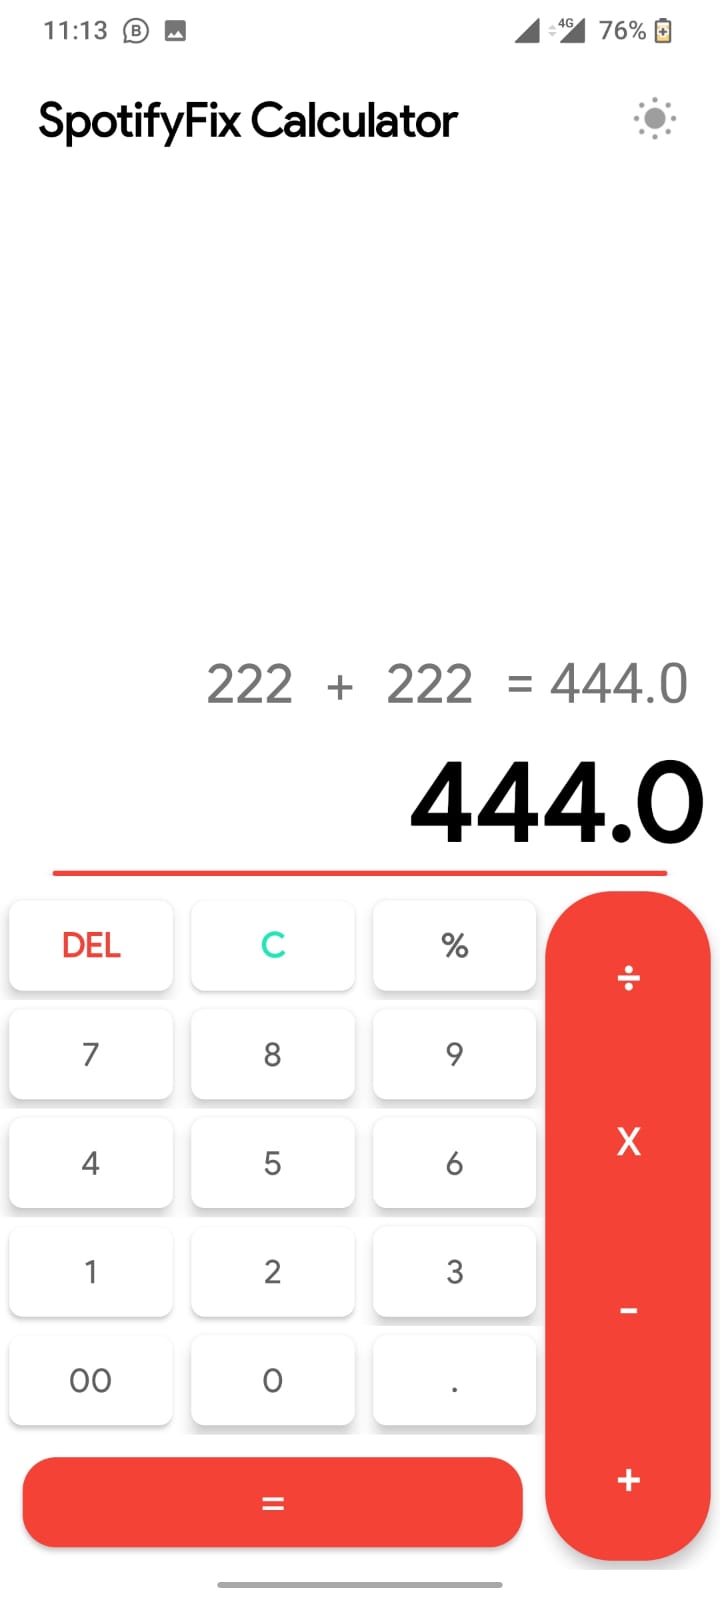 SpotifyFix Calculator